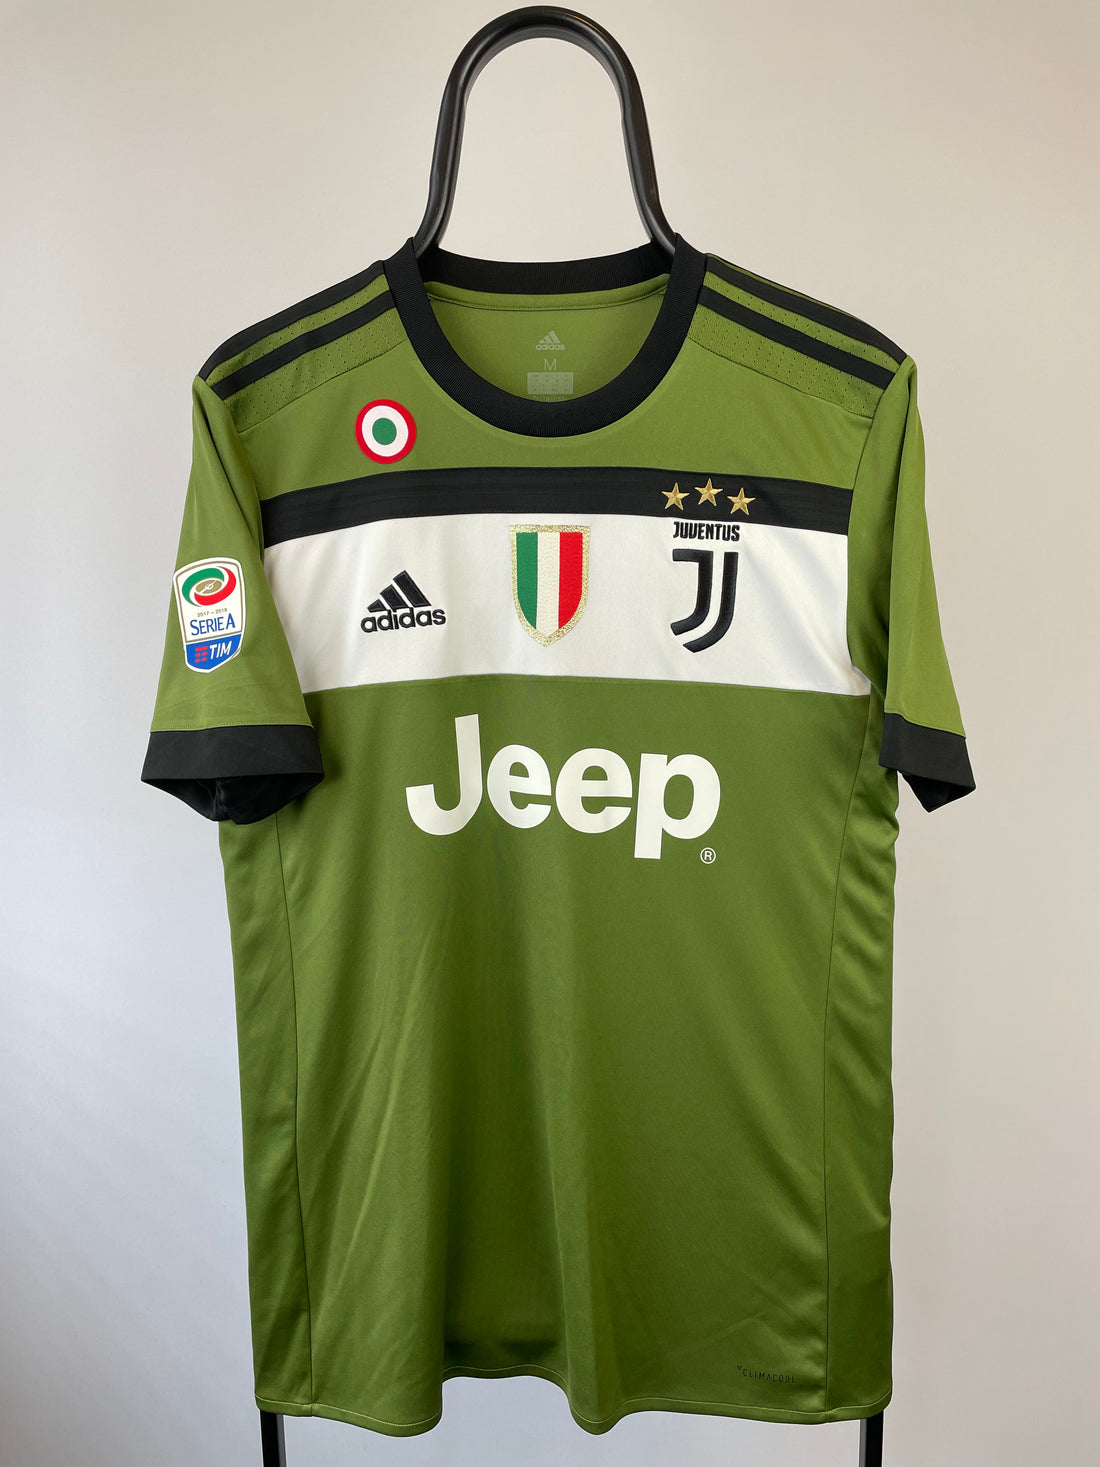 Claudio Marchisio Juventus 17/18 3 trøje - M